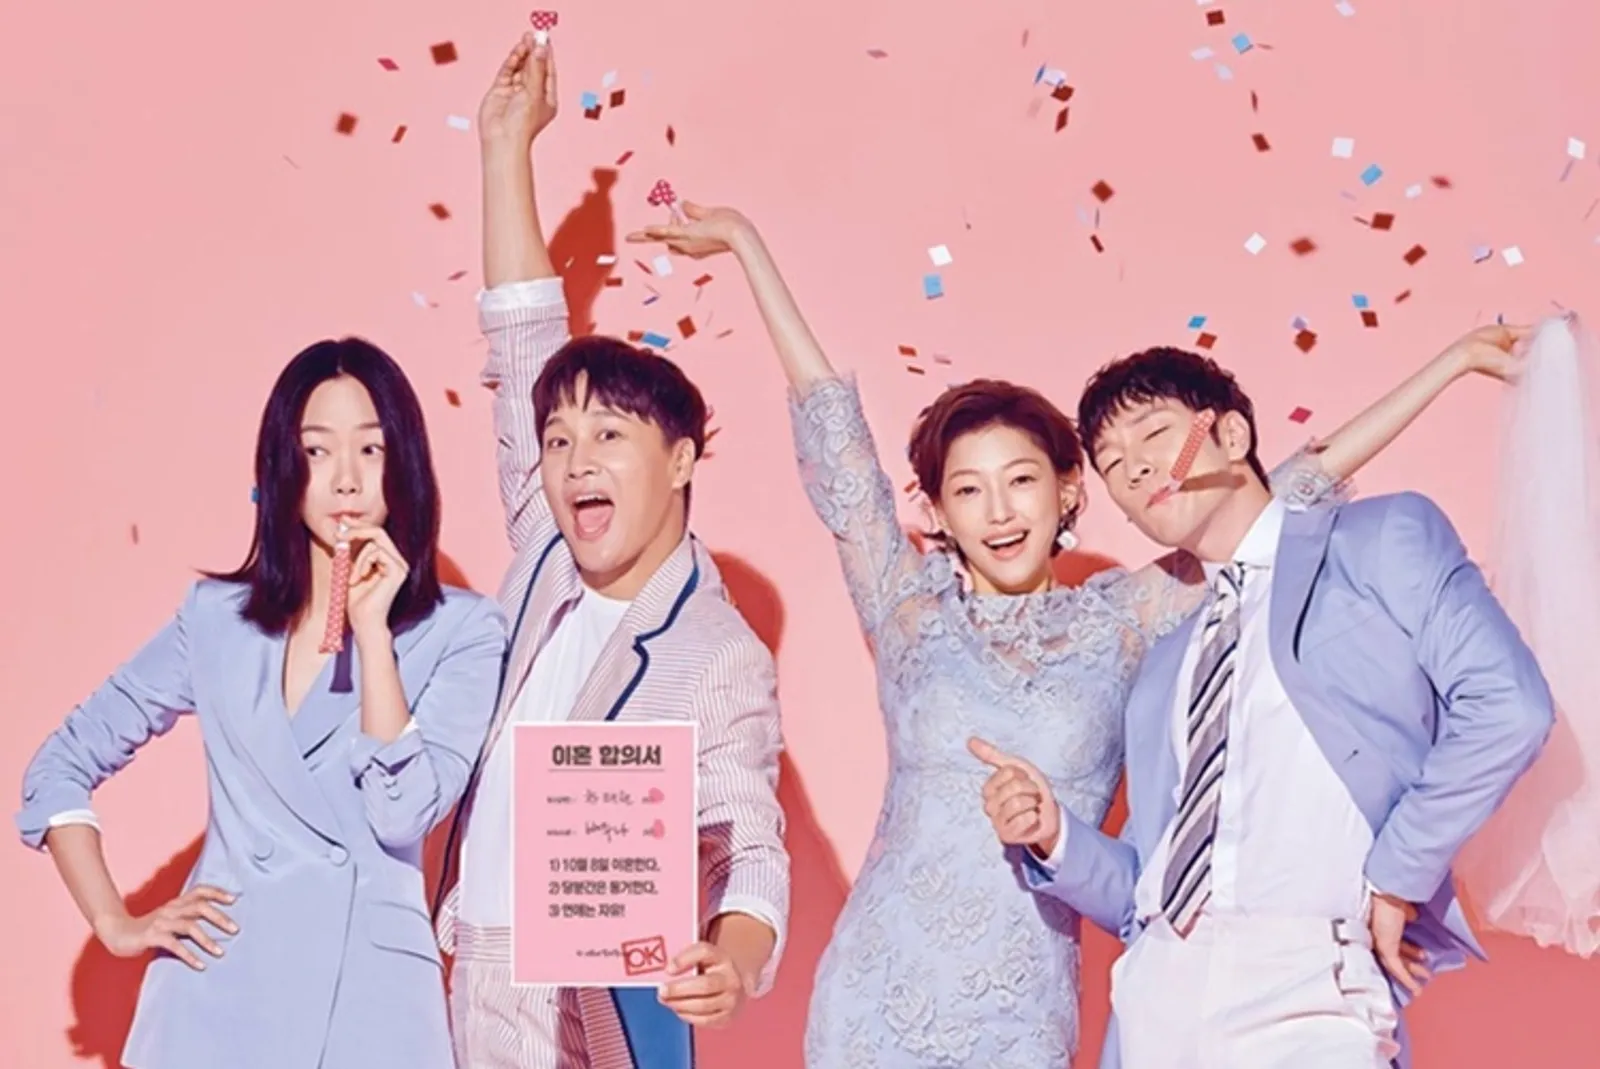 5 Drama Korea yang Buka Wawasanmu tentang Kehidupan Pernikahan